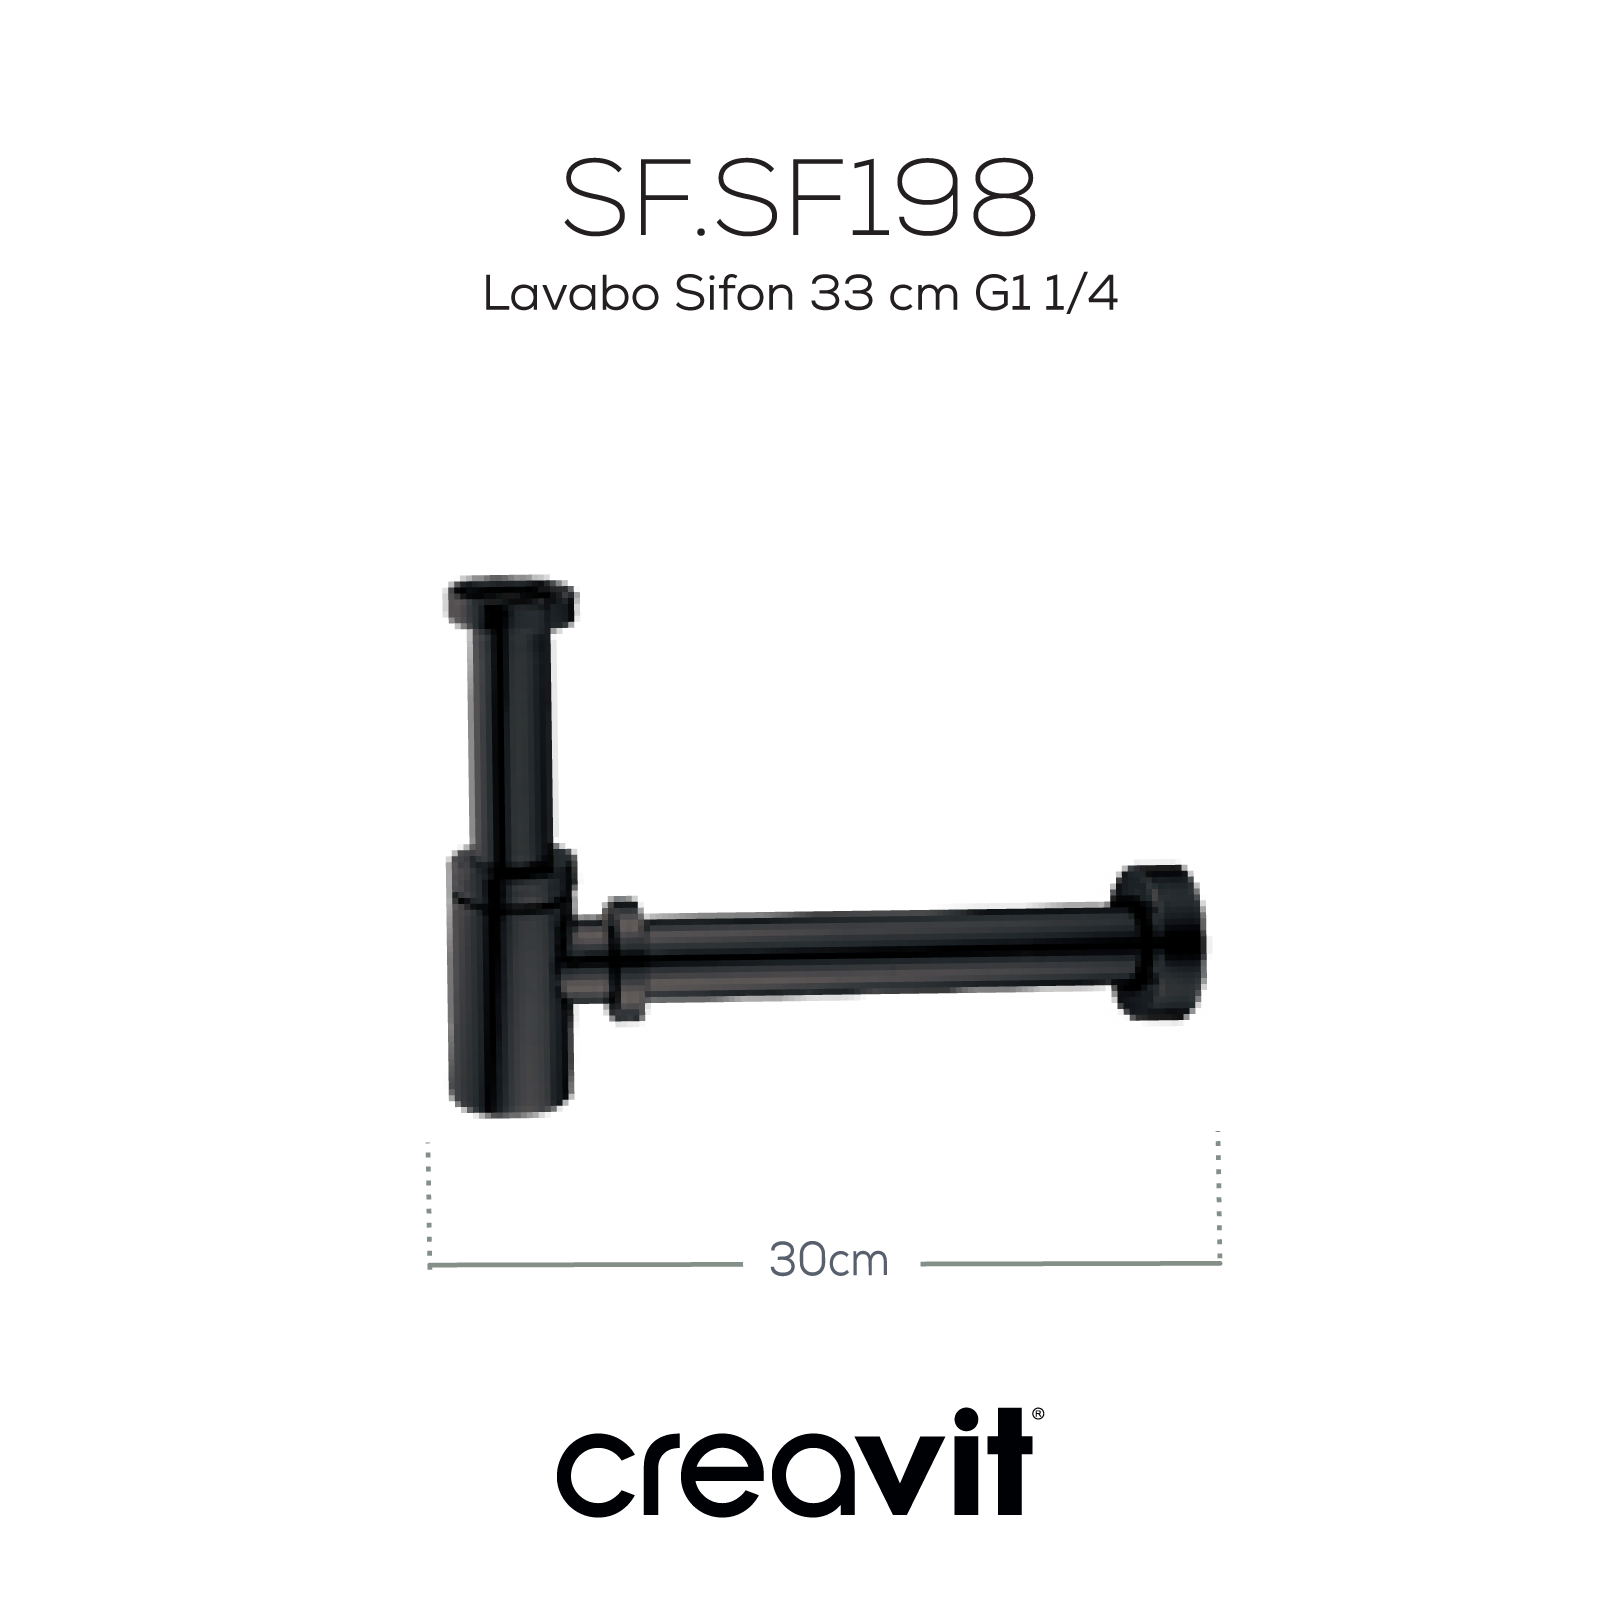 Lavabo Sifon 33 cm G1 1/4 mat siyah